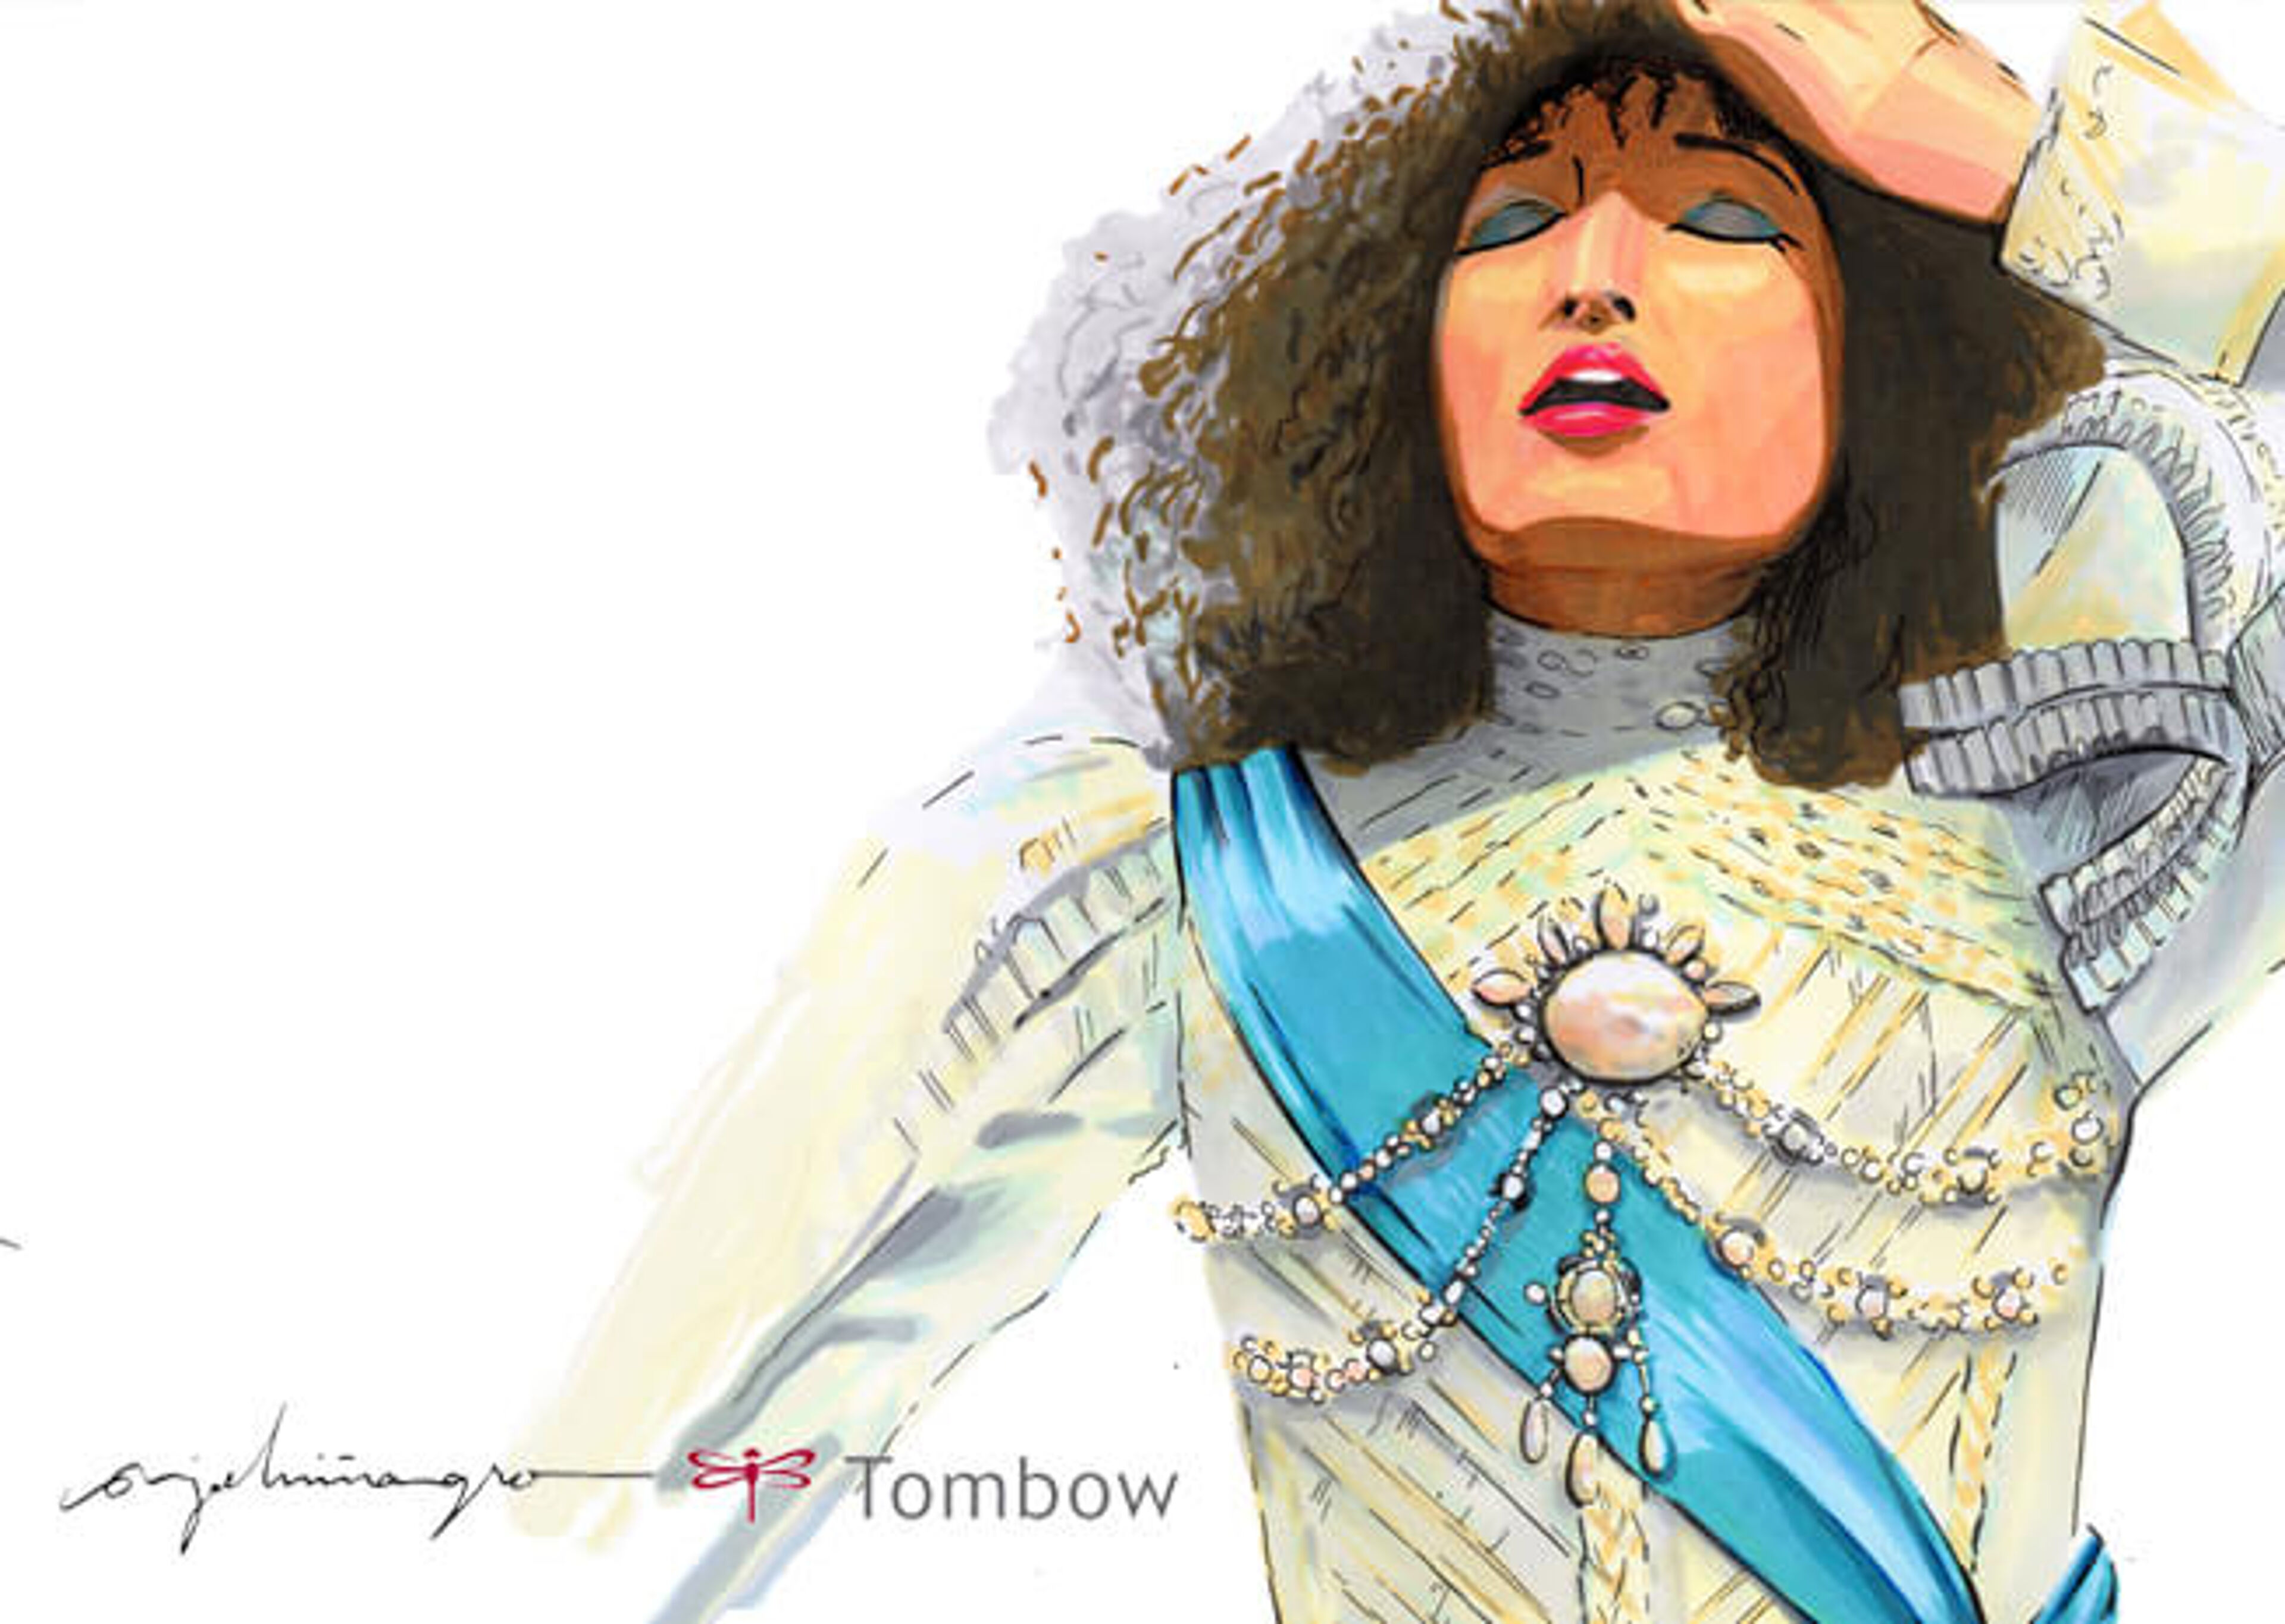  Imagen a mano de mujer en pose contemplativa, adornada con perlas y ropa vintage, con firma y logo de pincel "Tombow".